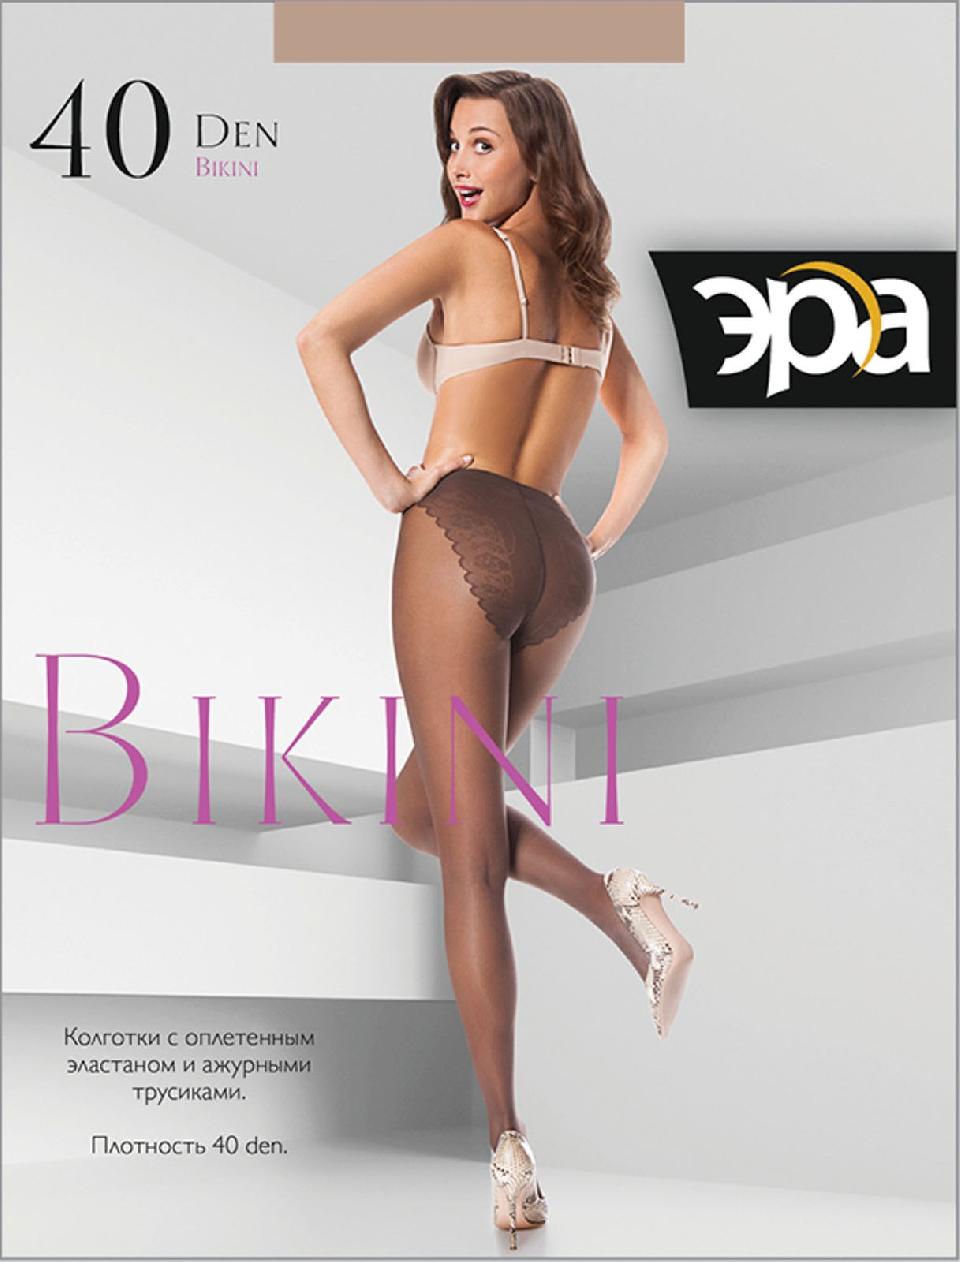 Эра Bikini 40 XL американка /колготки/ загар 5